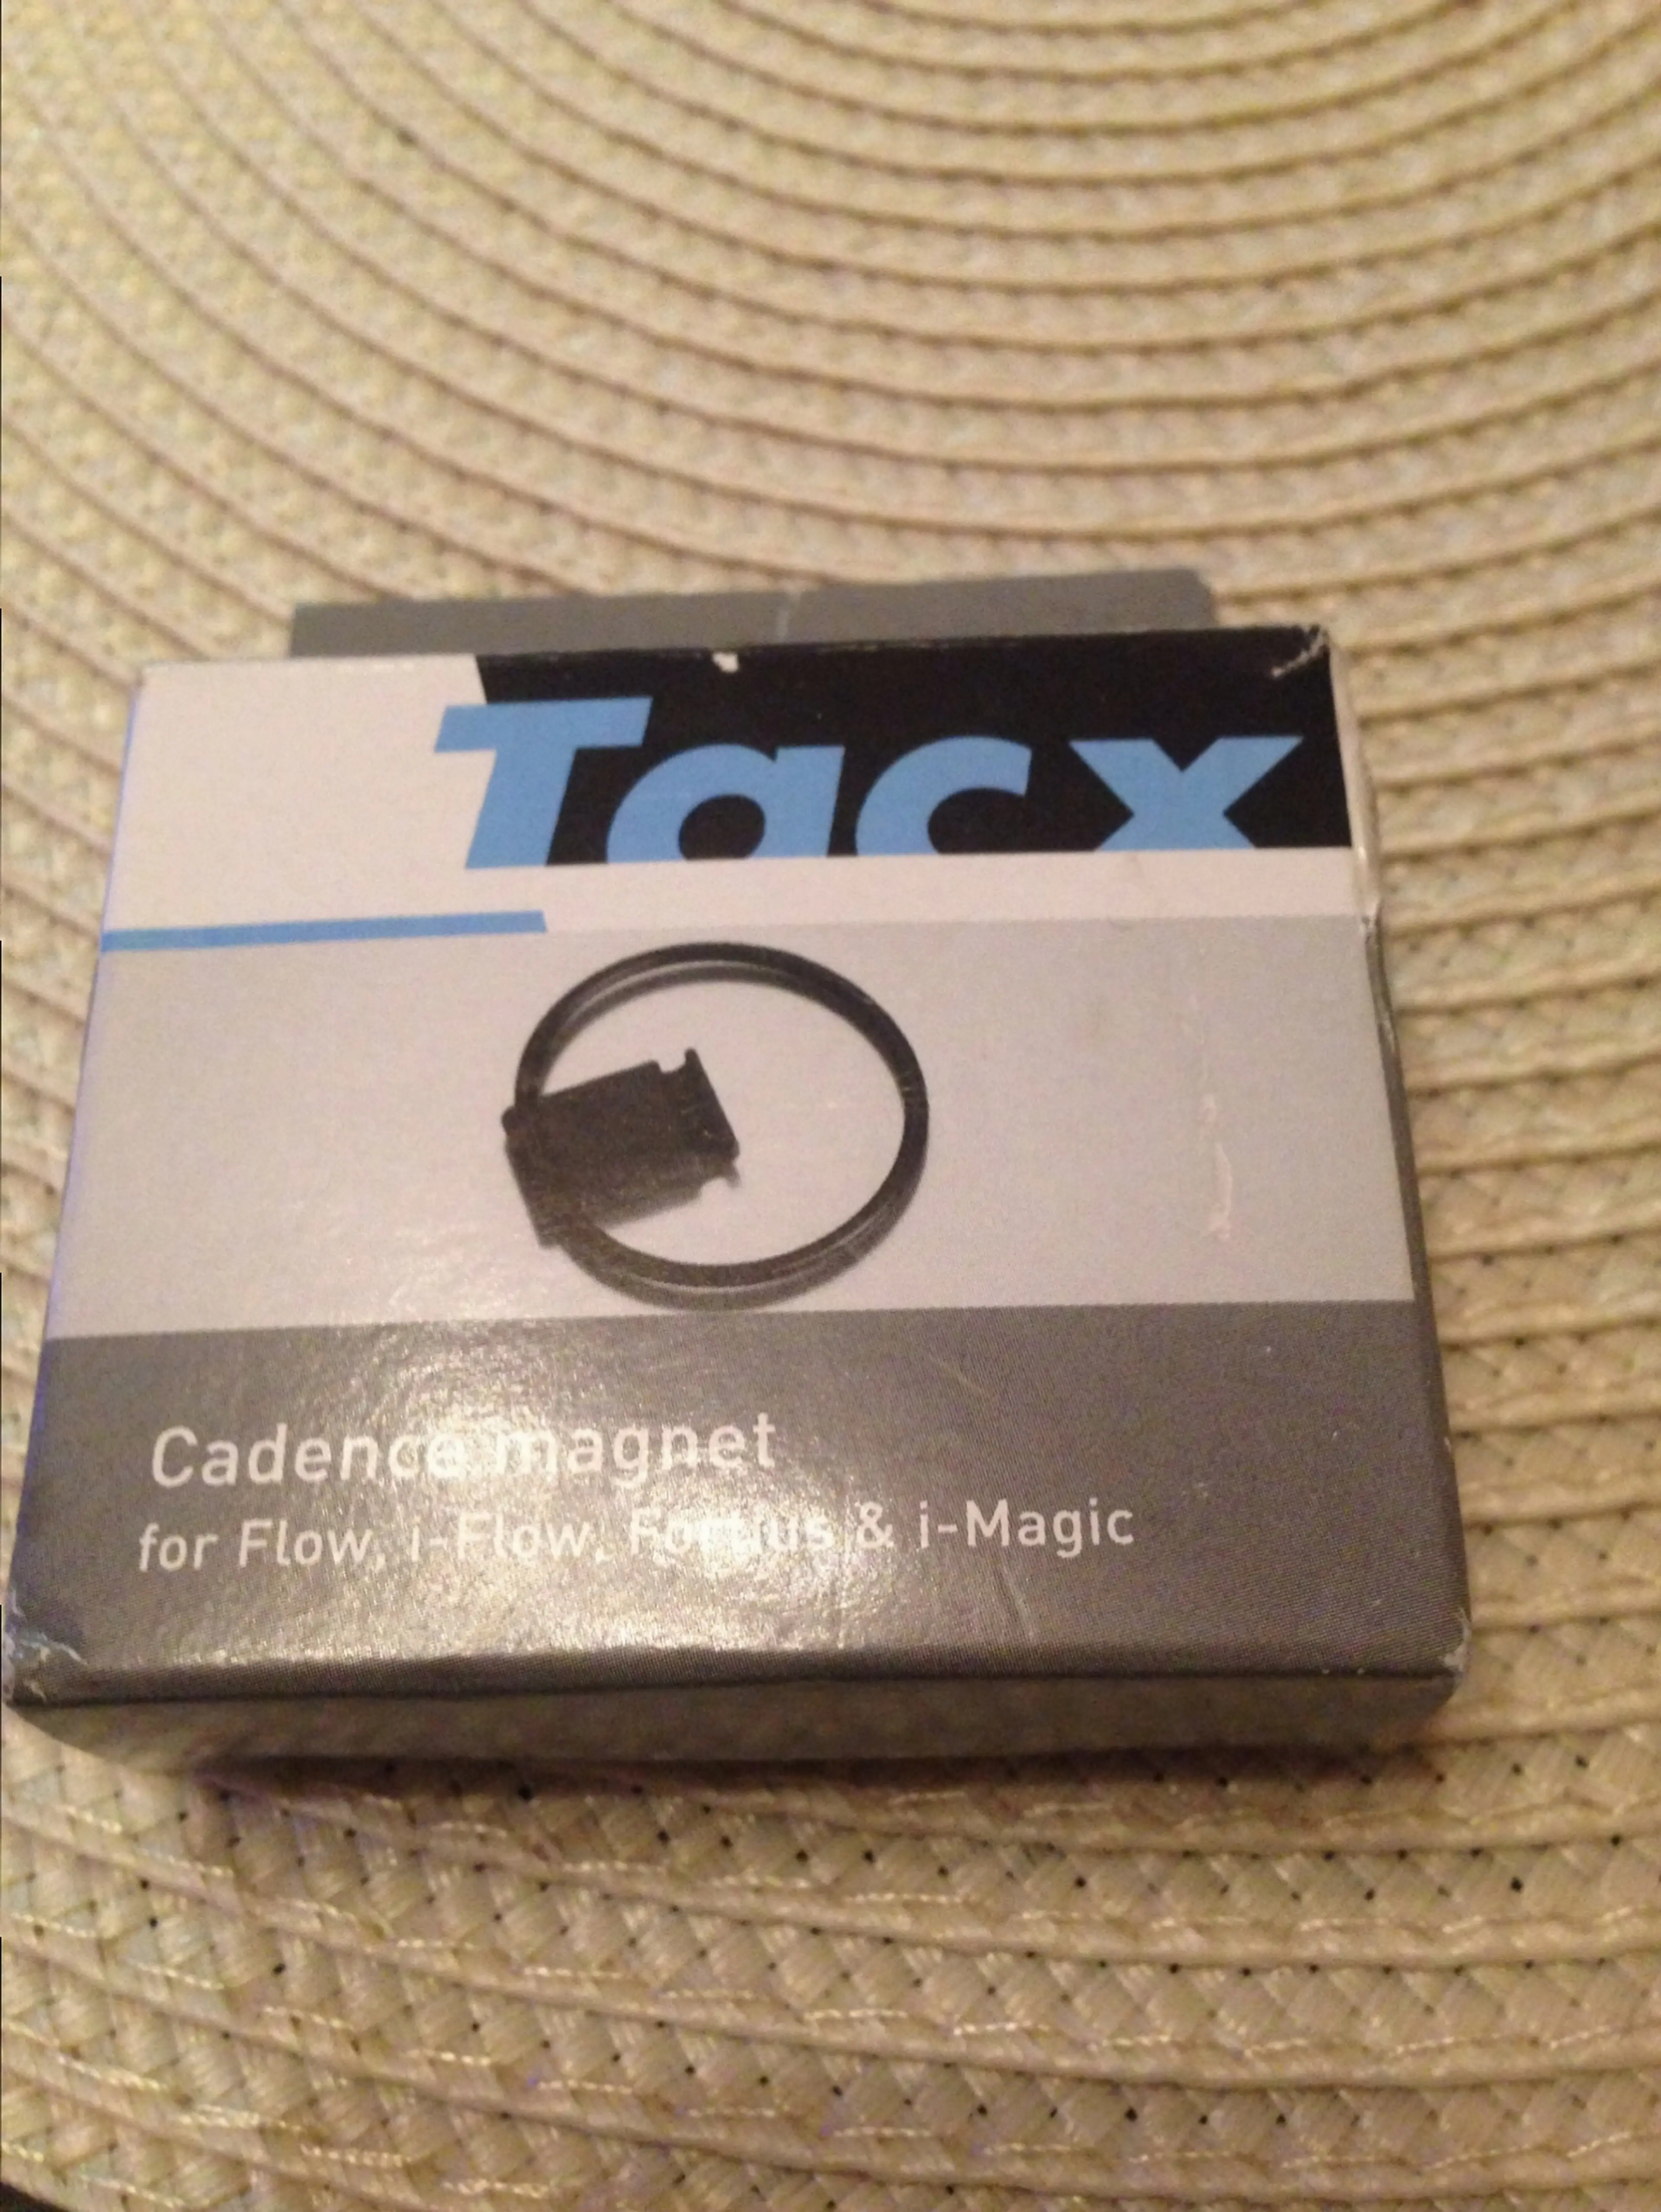 Image Tacx - Magnet cadenta trainer - nou